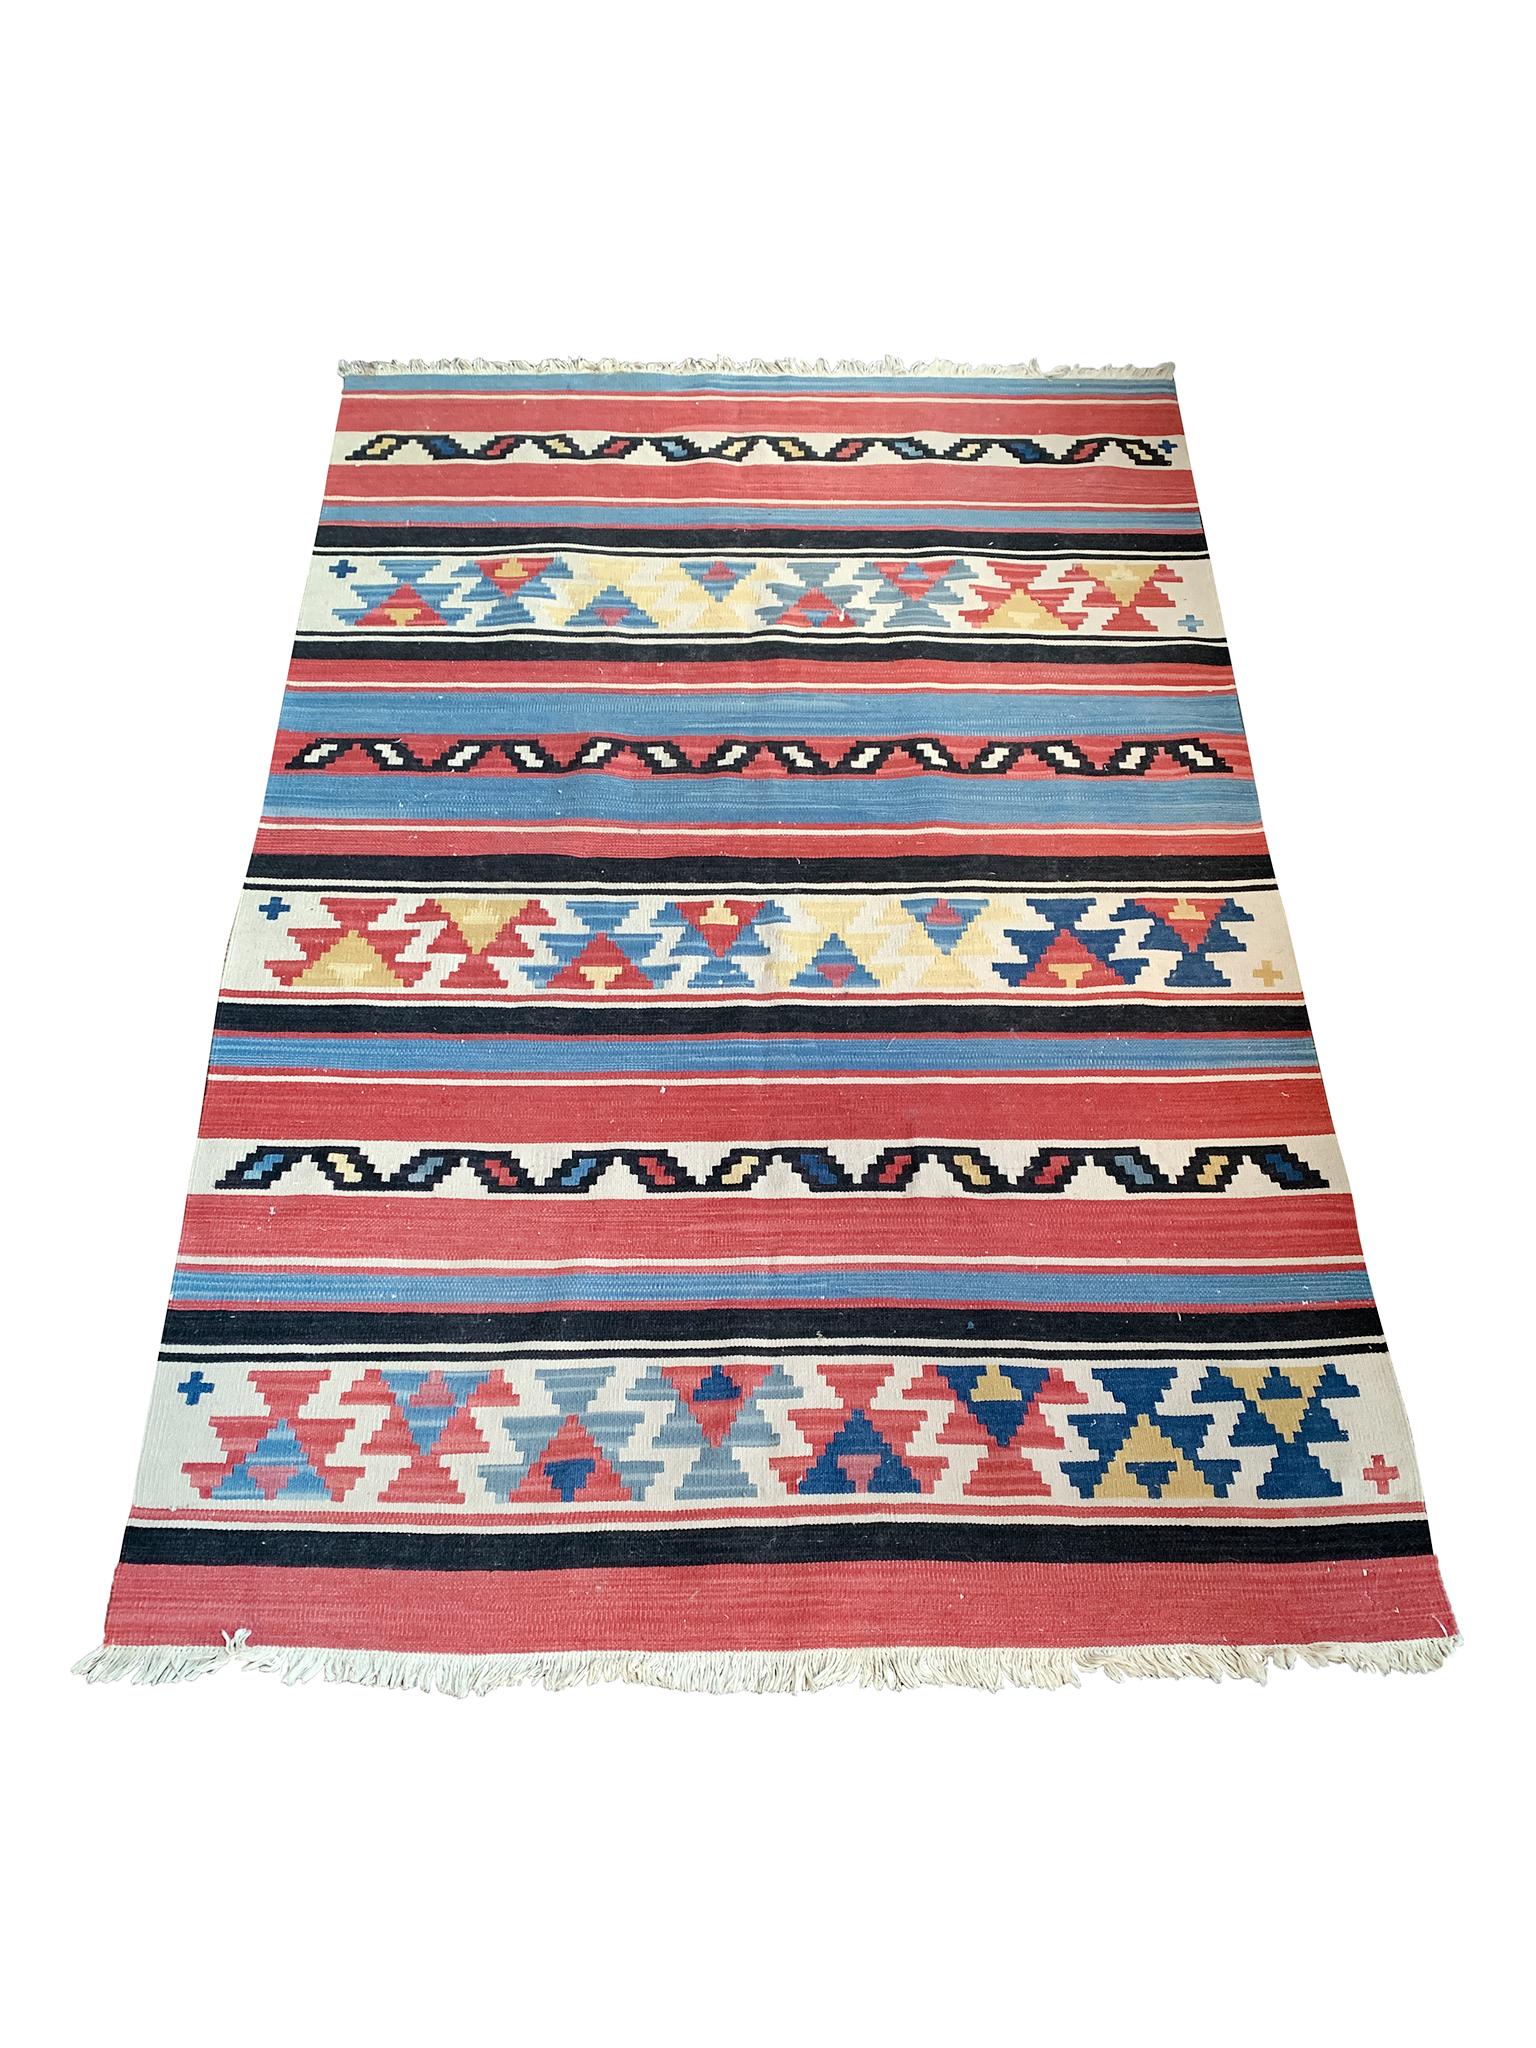 Handgewebter, gestreifter Navajo-Teppich des 20. Jahrhunderts mit einer leuchtenden Farbpalette aus Blau, Rot, Gelb, Elfenbein und Schwarz.

Abmessungen:
6' x 3' 11